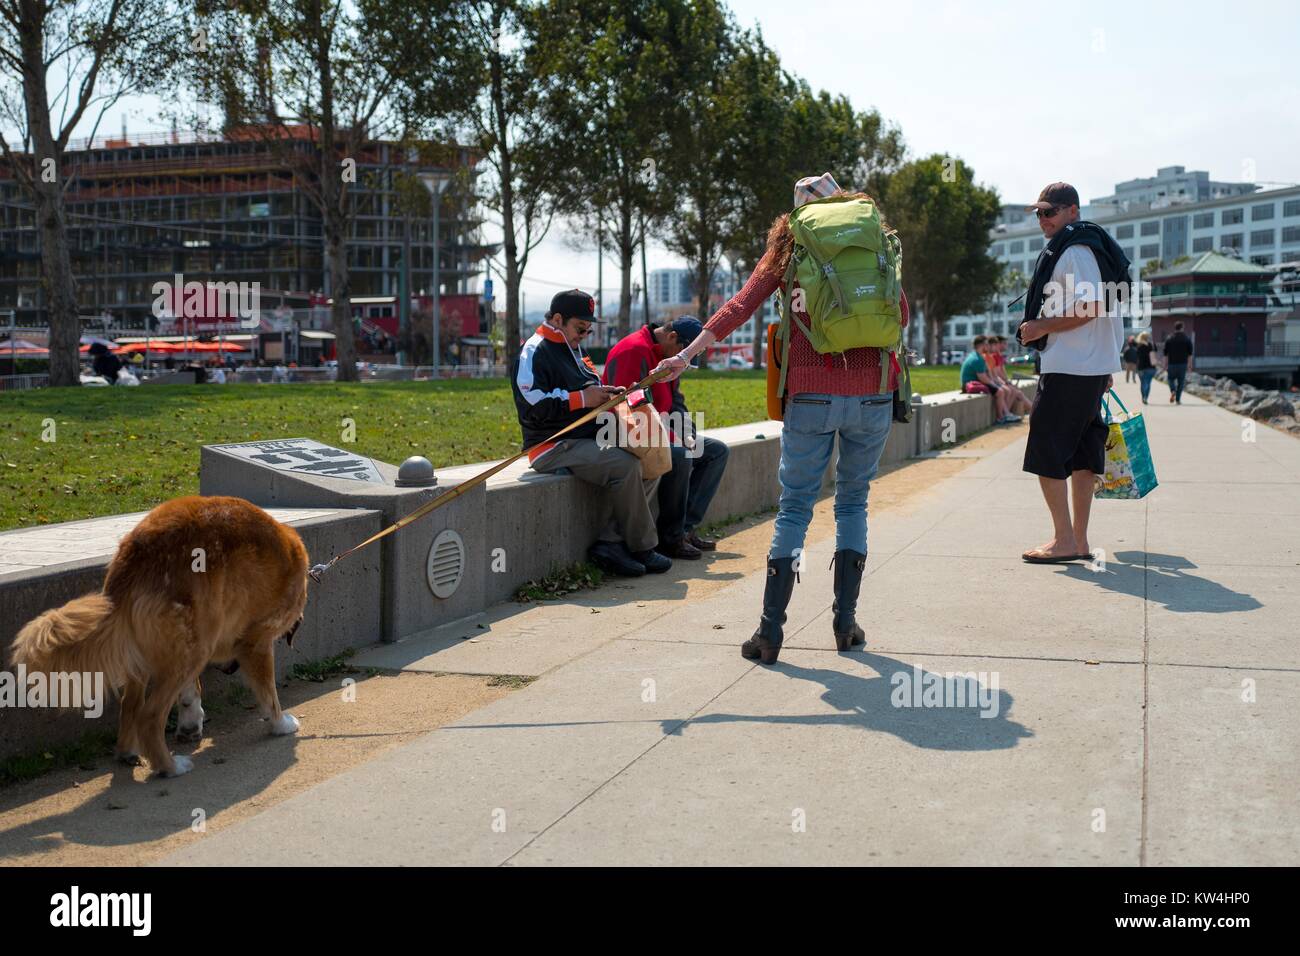 Un couple marche leur chien au parc du bassin de la Chine avant les jours de canicule articles promotionnels d'un match de baseball, un événement annuel dans lequel l'équipe de baseball des Giants de San Francisco permet aux fans d'amener leurs chiens pour un match de saison régulière, près de ATT Park dans le bassin de la Chine quartier de San Francisco, Californie, le 21 août 2016. Banque D'Images